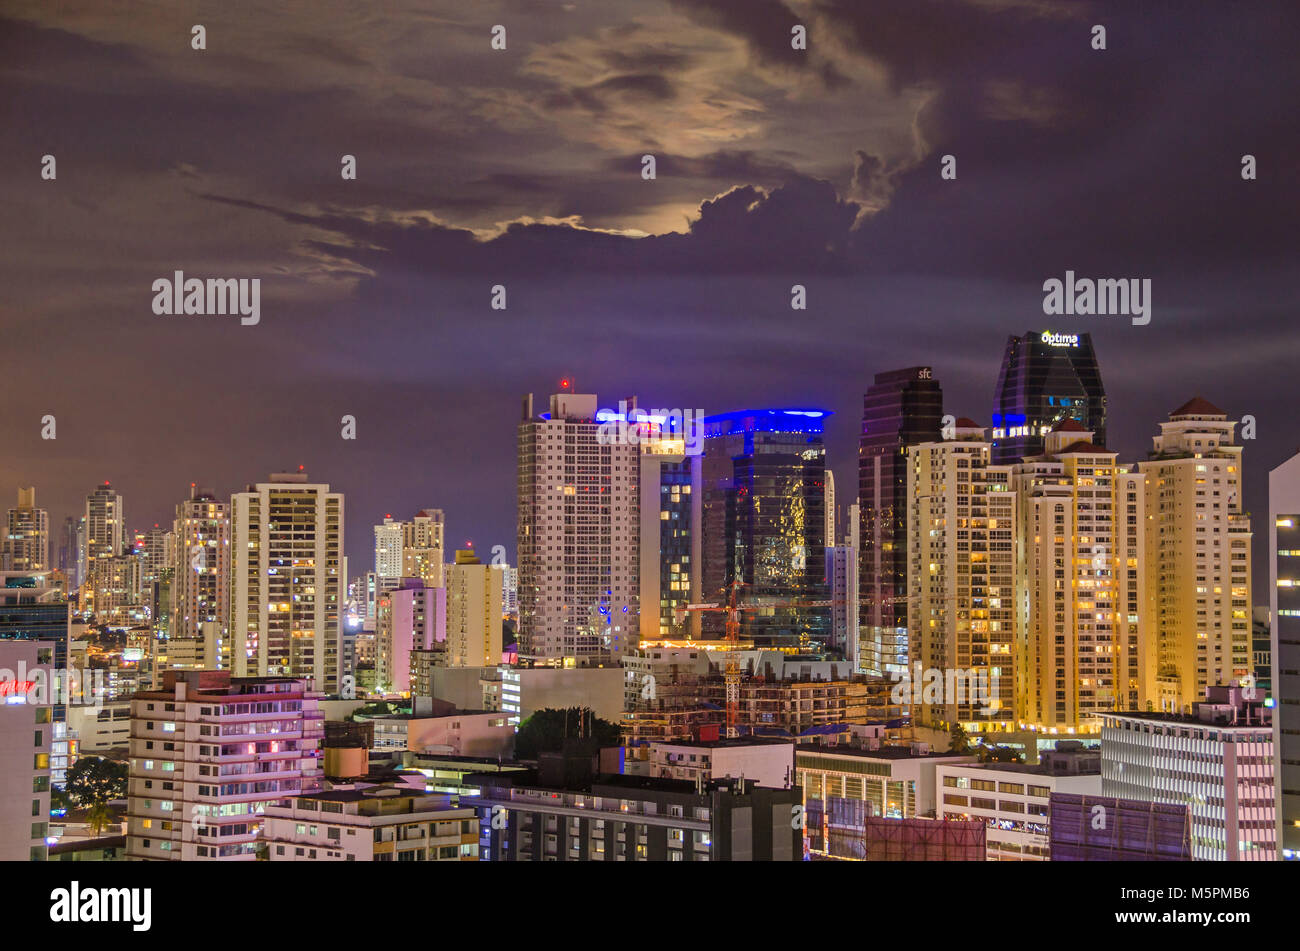 La ville de Panama, Panama - 4 novembre, 2017 : Skyline de la ville de Panama, la nuit. Vue depuis le toit de l'hôtel Tryp by Windham. Banque D'Images